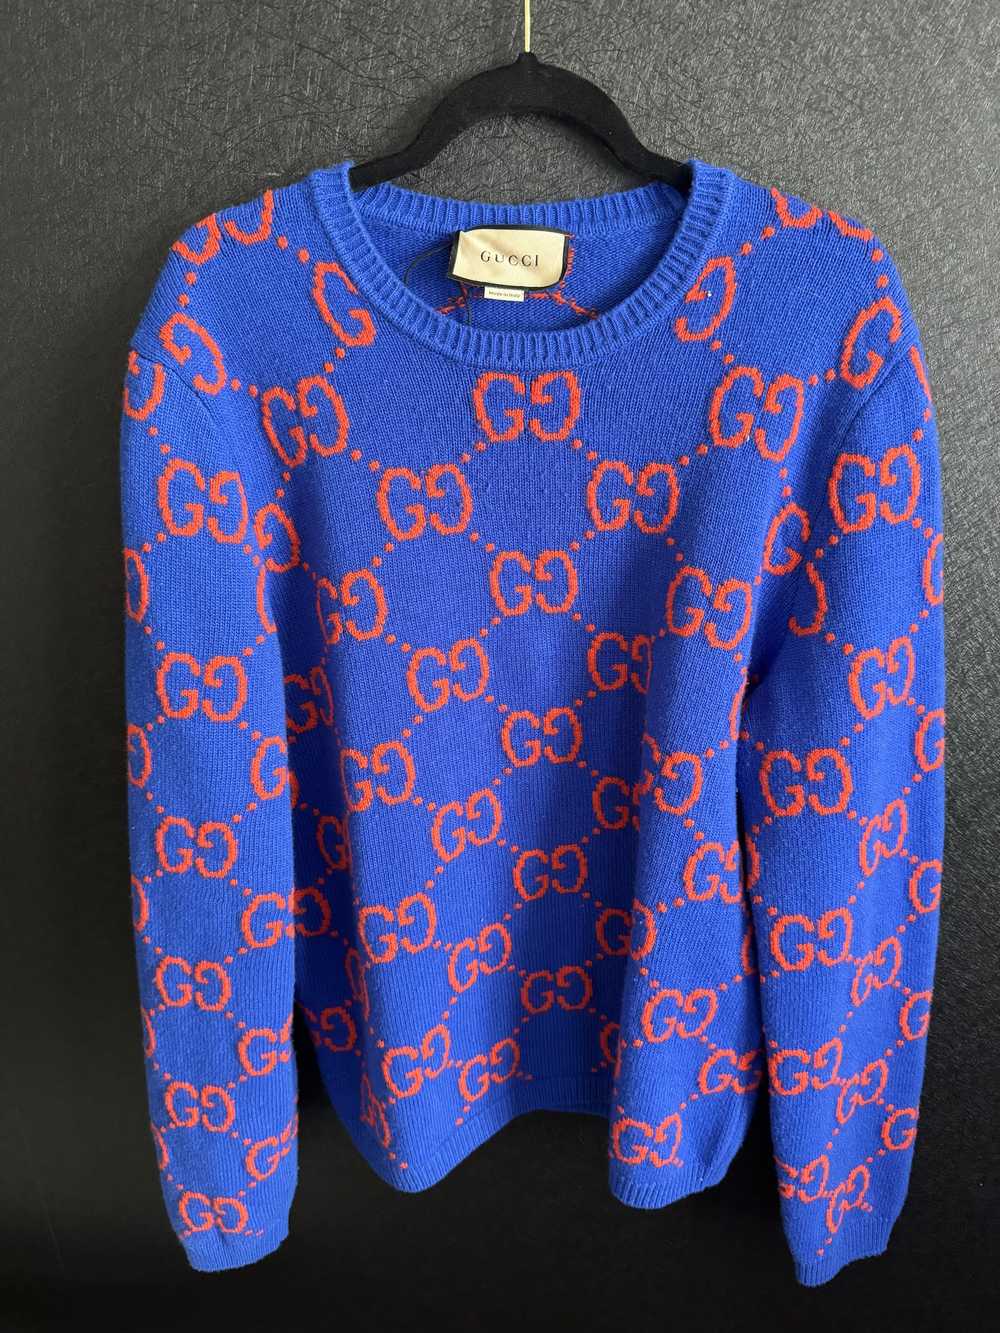 Gucci Gucci Sweater - image 3